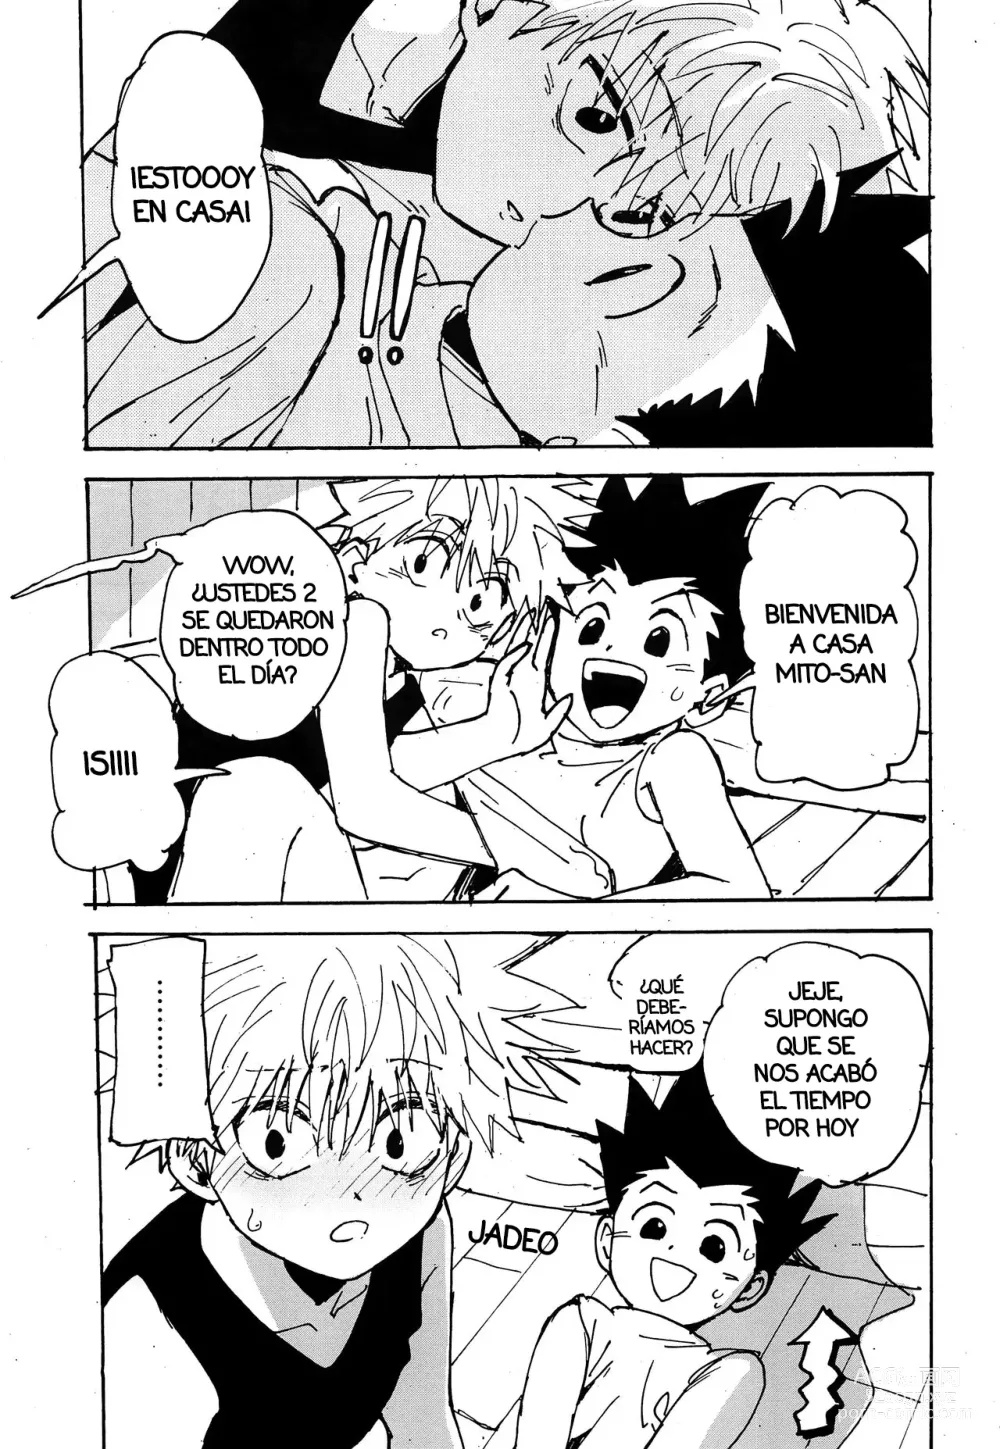 Page 48 of doujinshi Imprudencia Juvenil